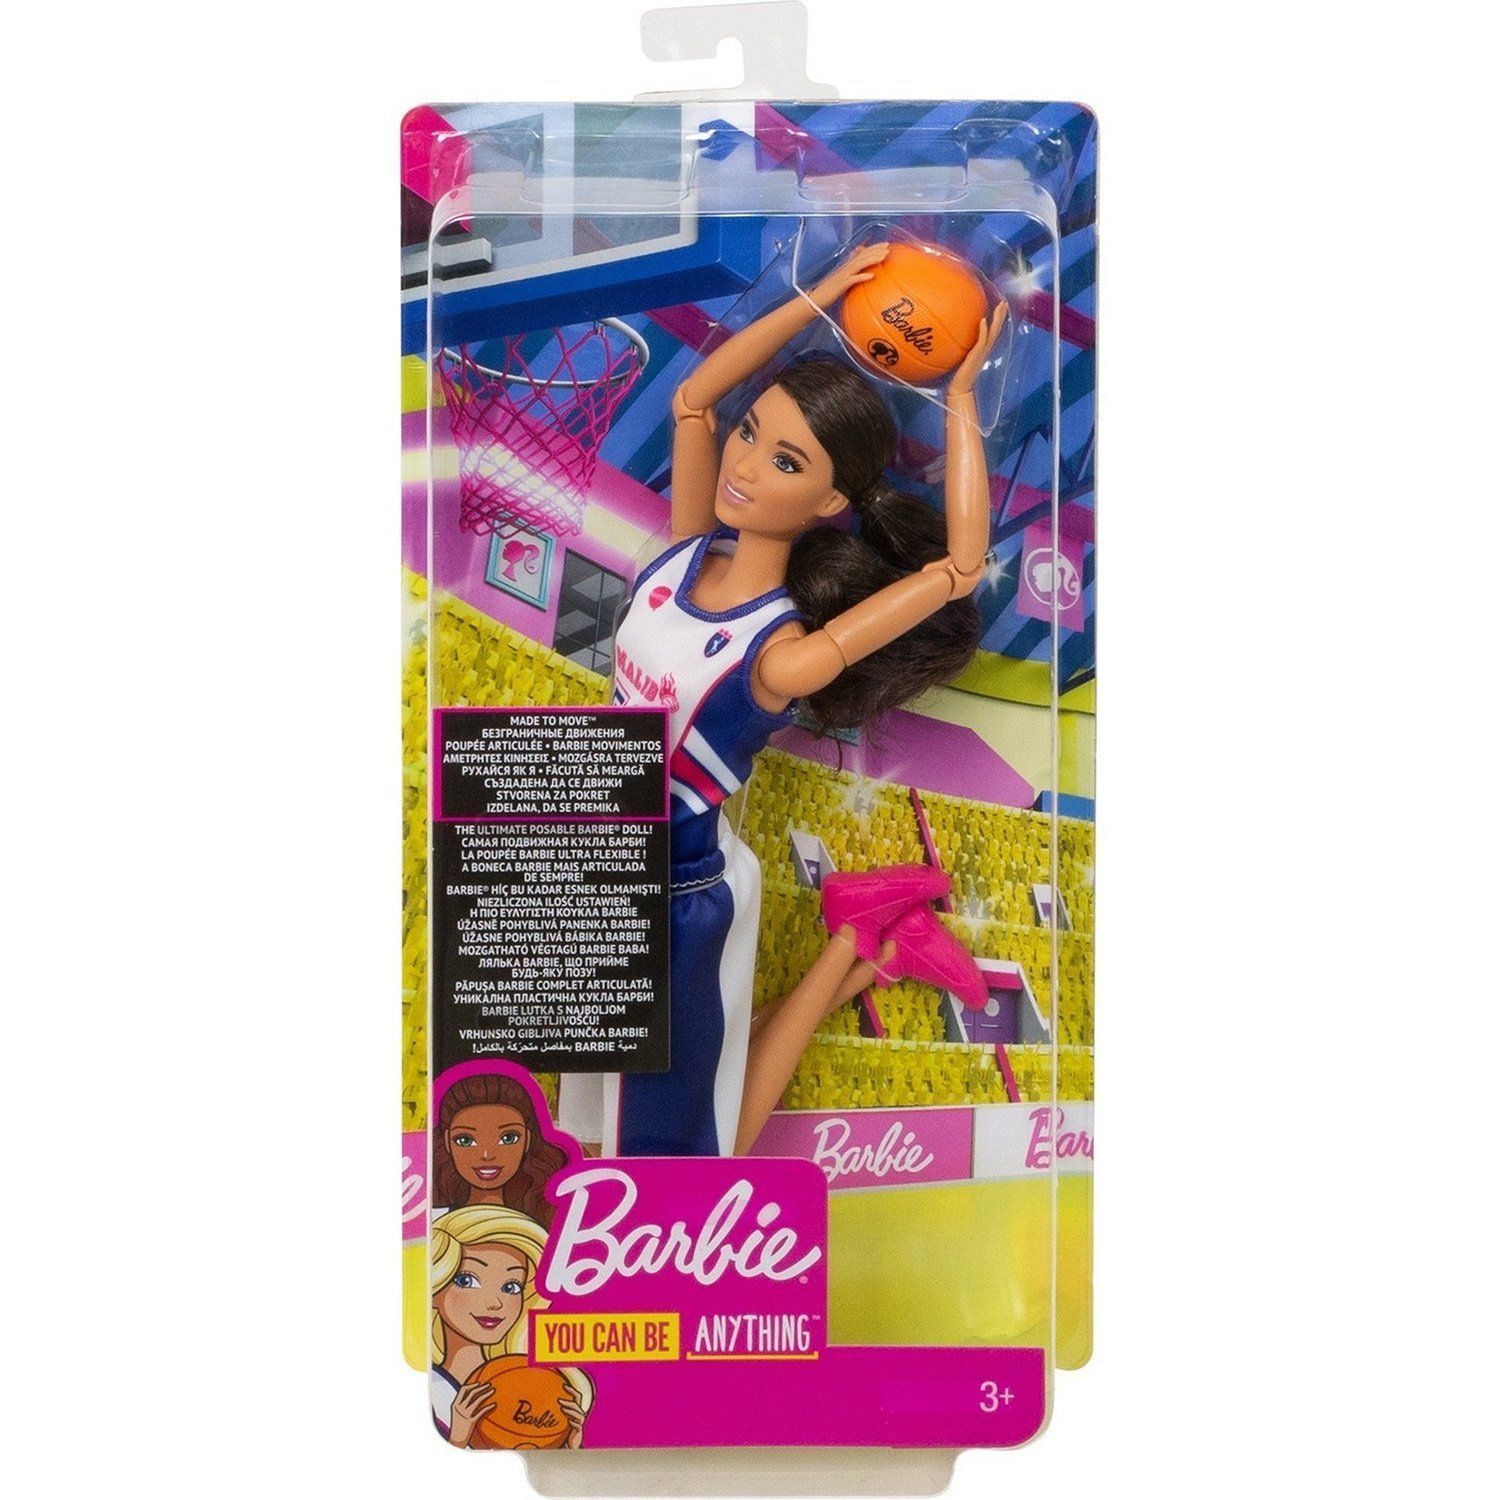 Кукла Барби MADE TO MOVE Баскетболистка DVF68/FXP06